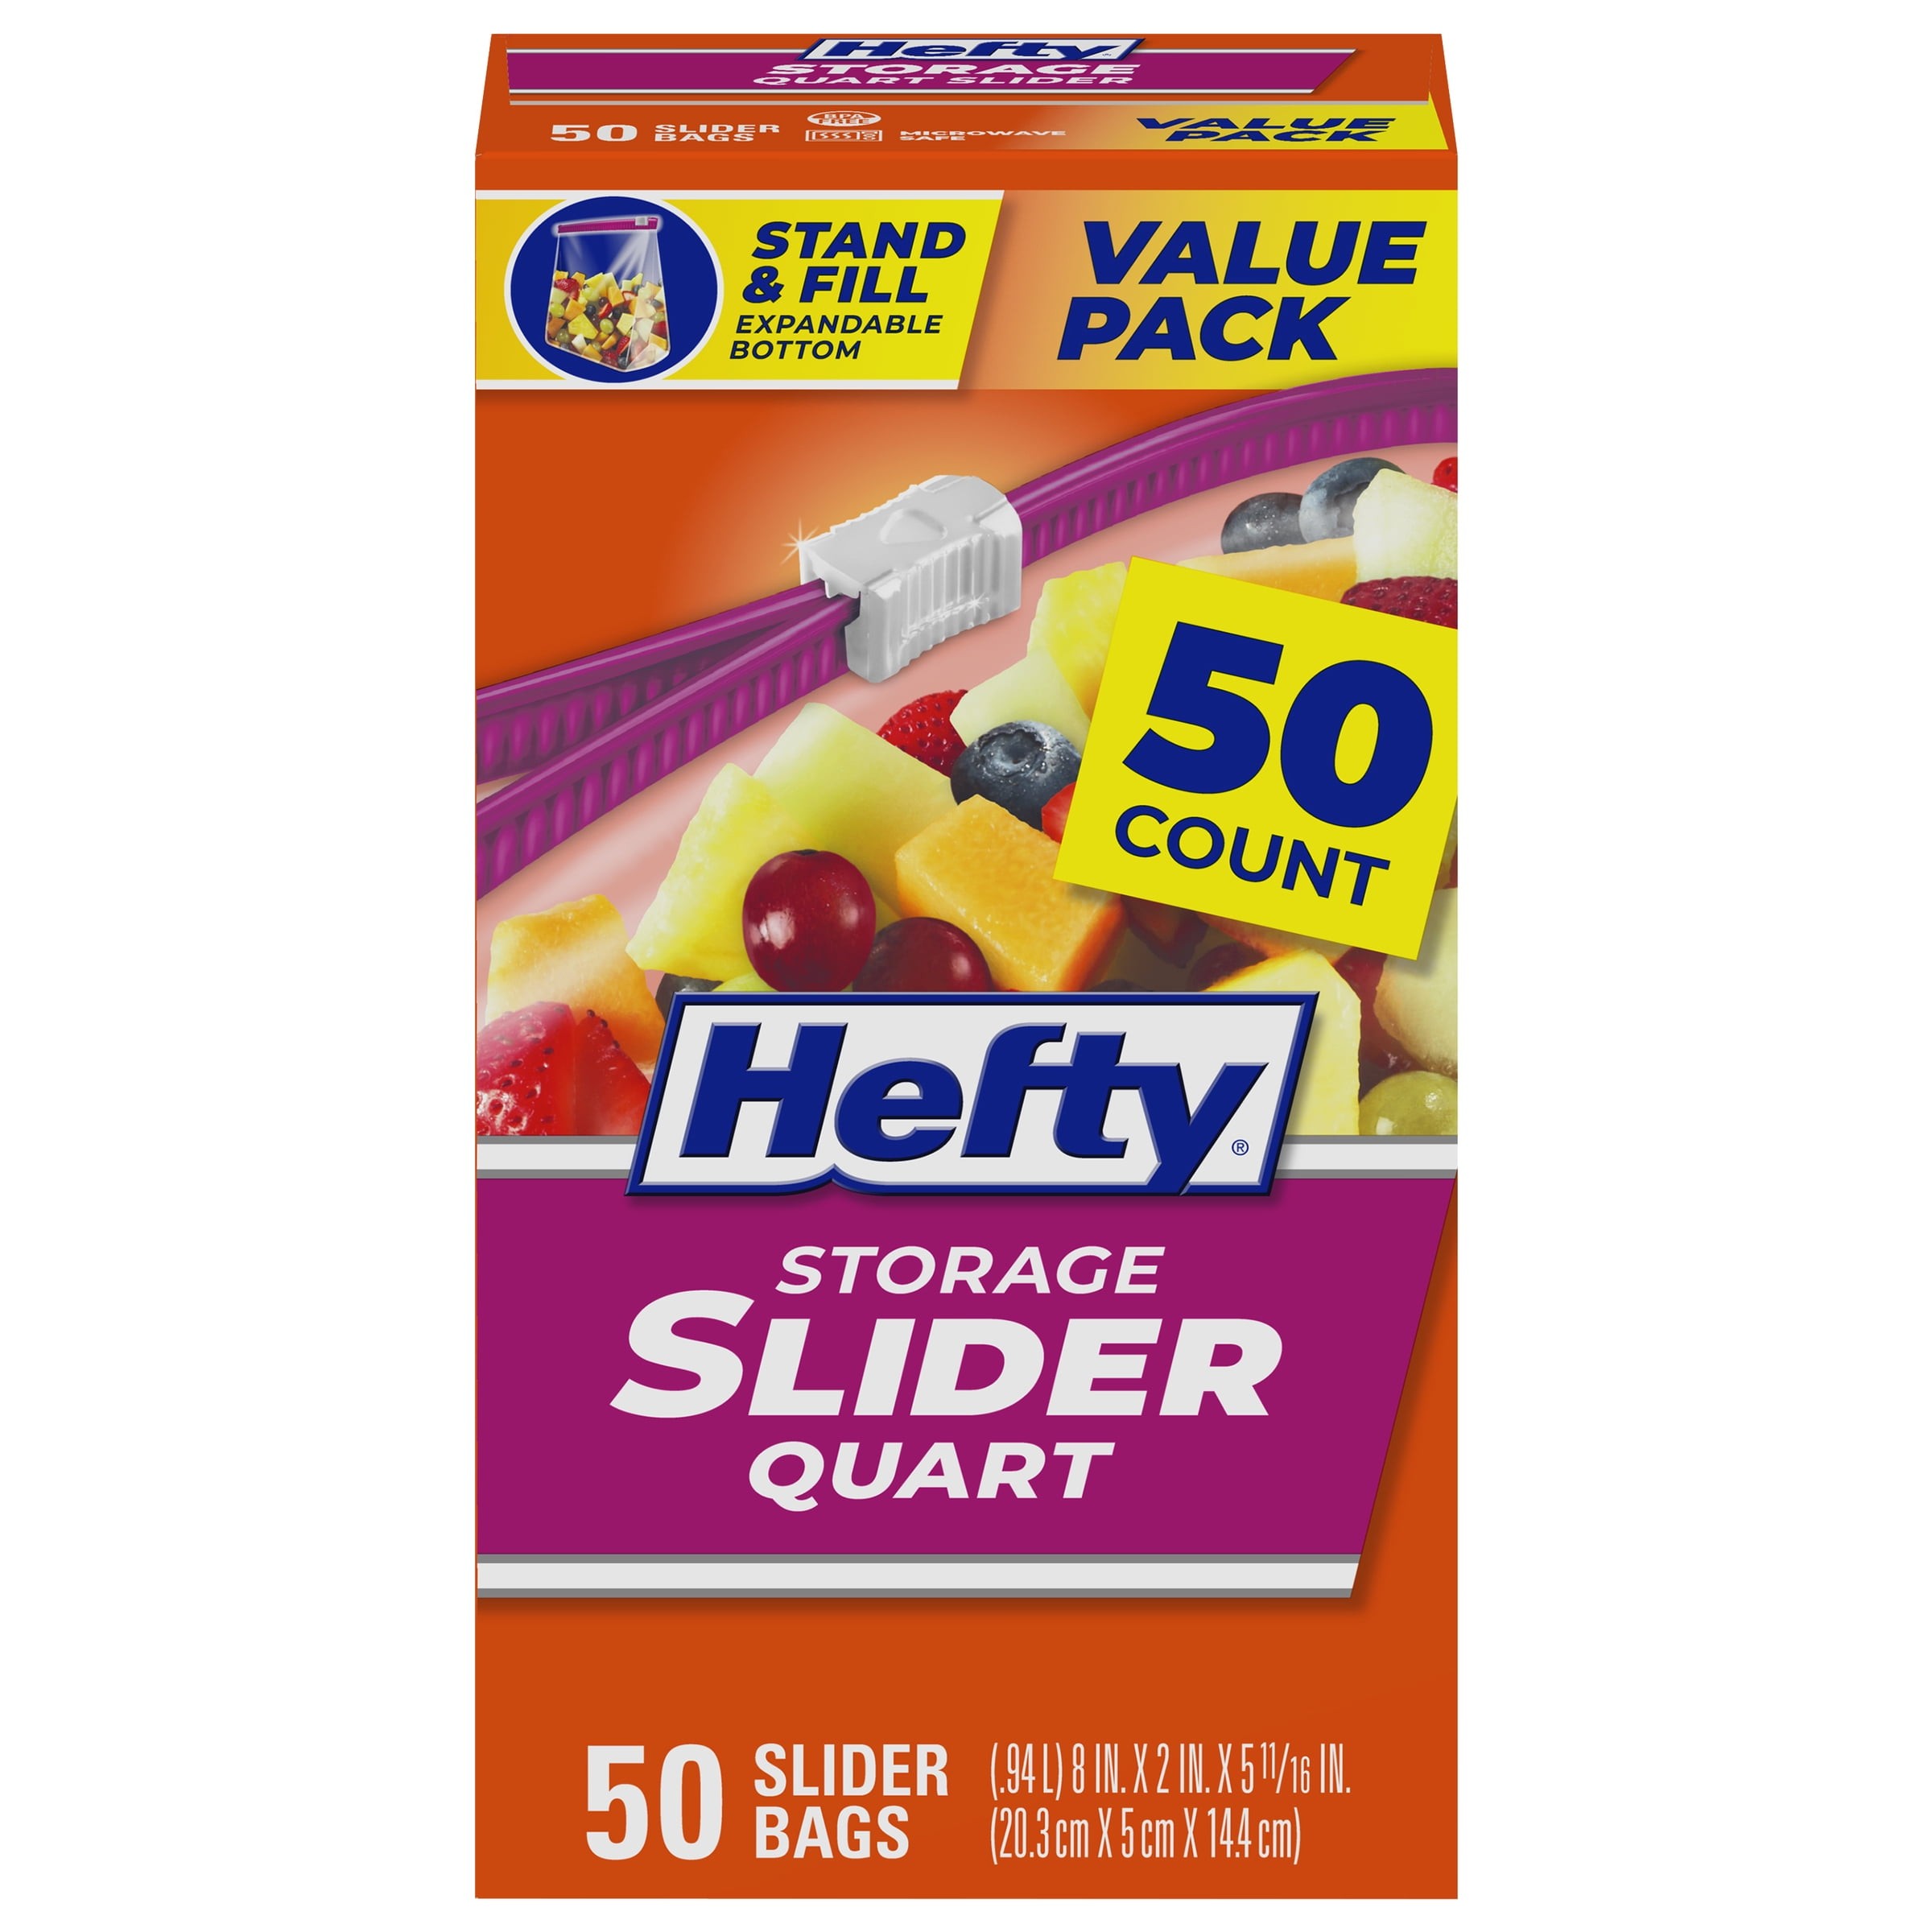 Mejores ofertas e historial de precios de Hefty Slider Freezer